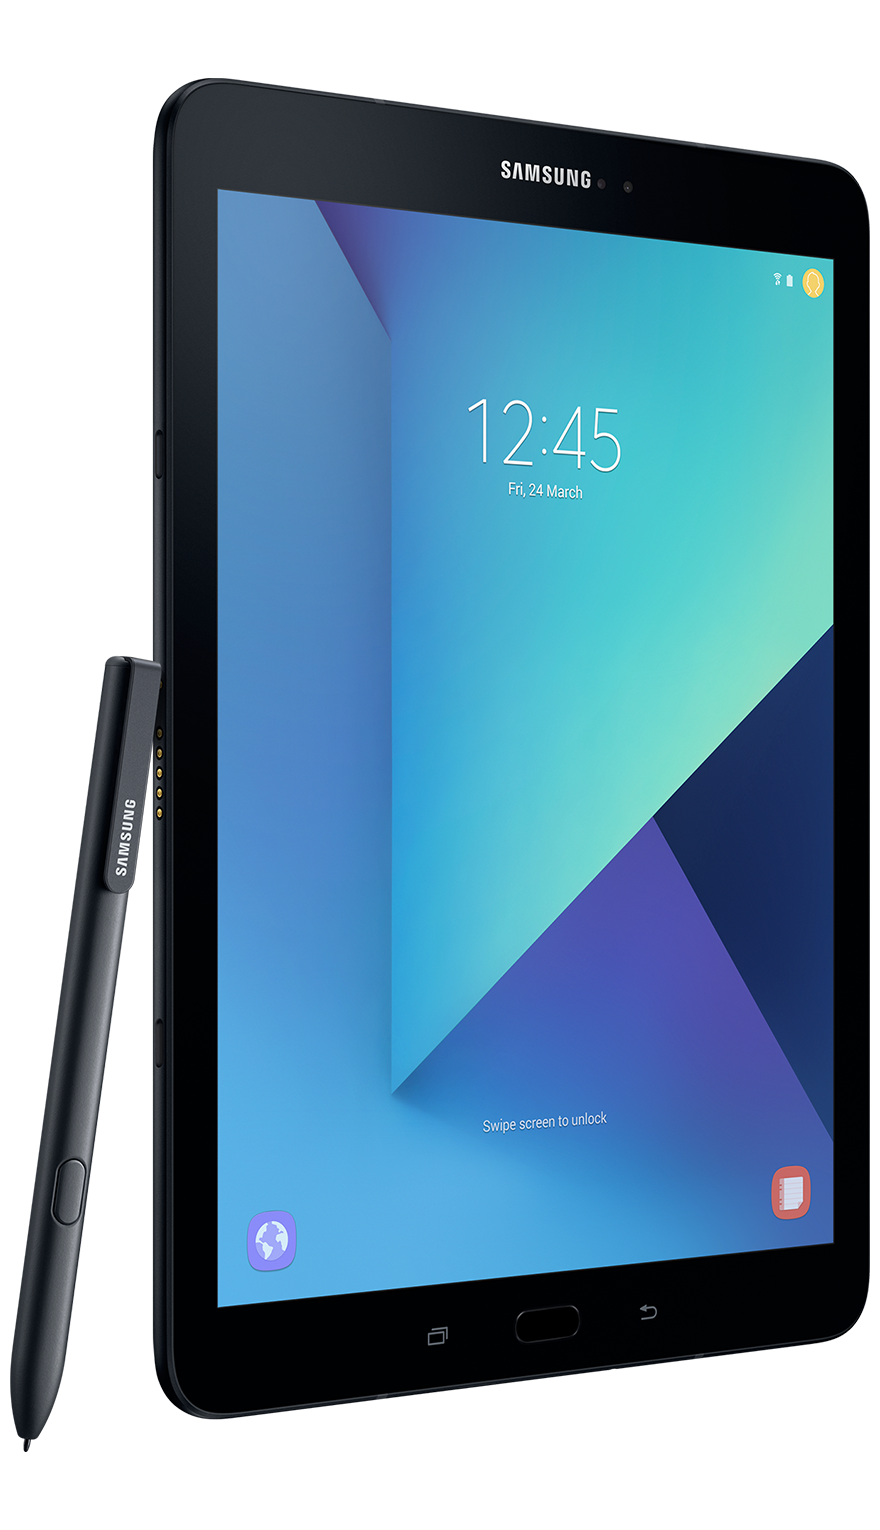 Samsung Galaxy TAB S3 LTE | Tele2